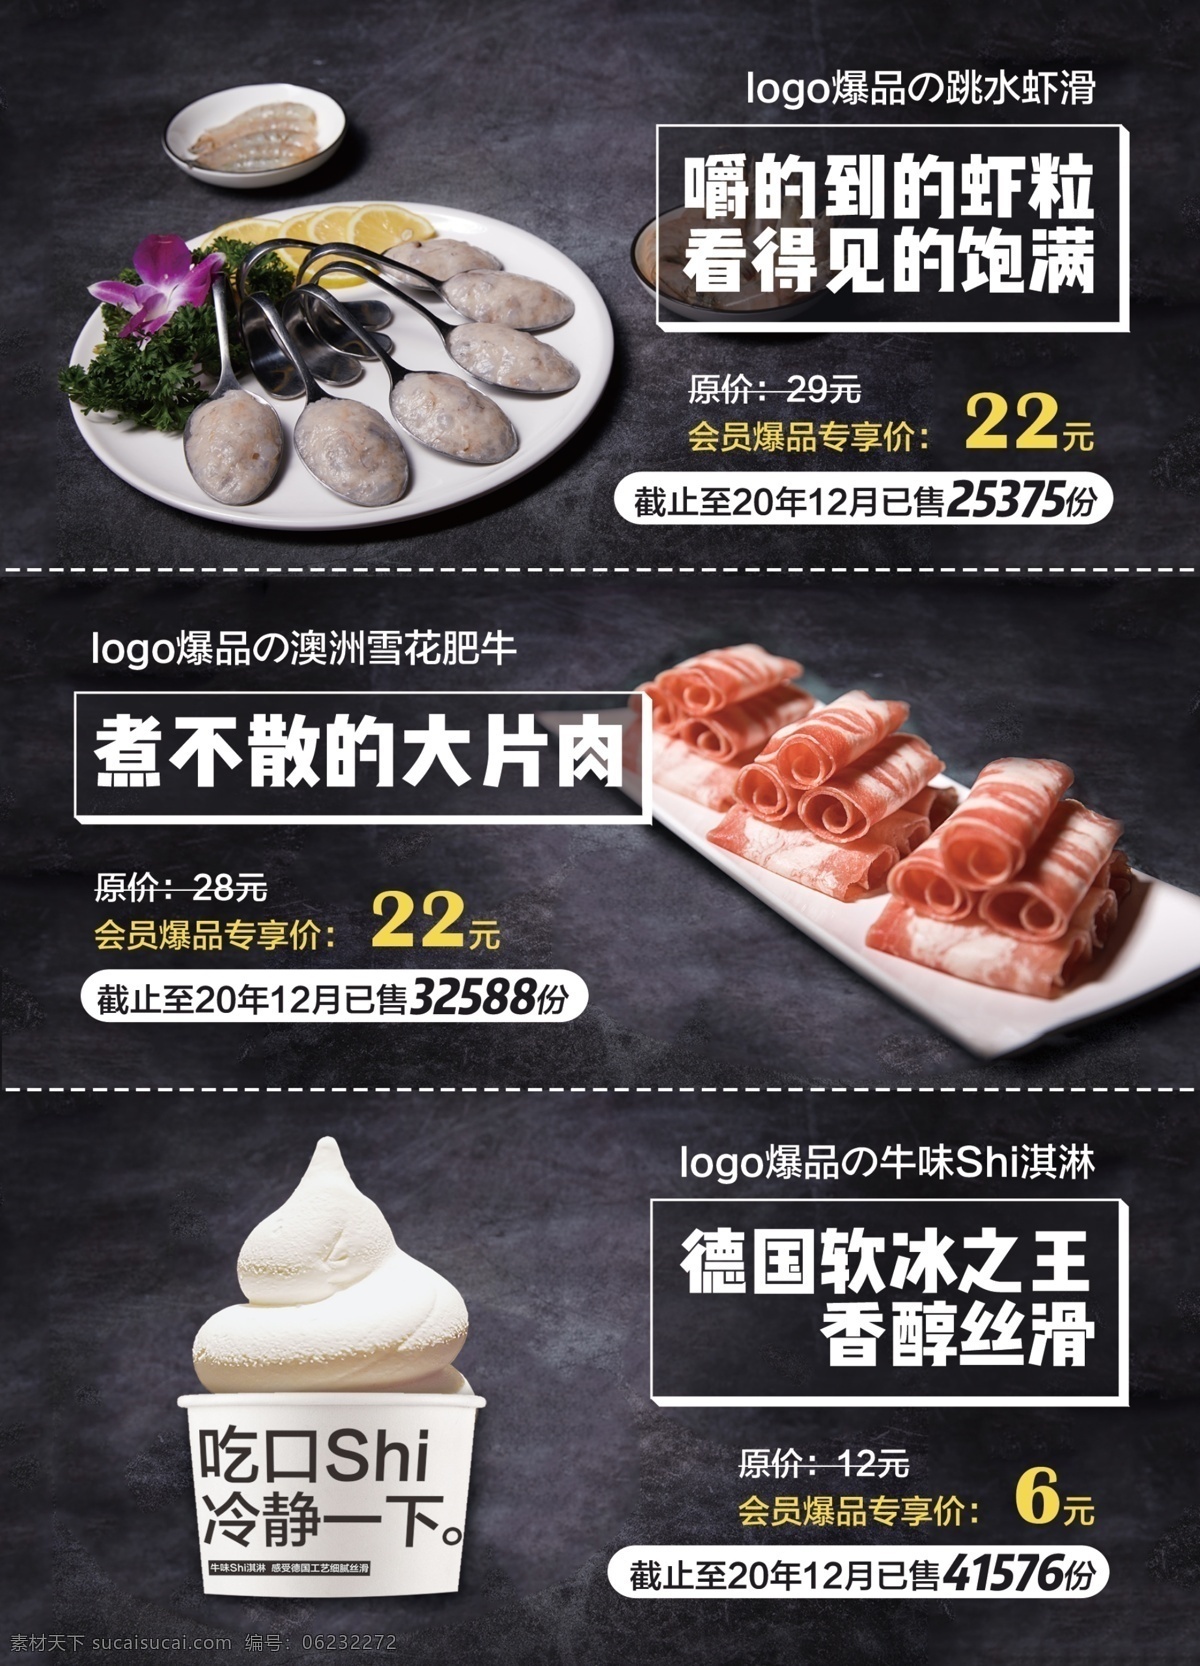 火锅 宣传页 菜品 展示 台卡 dm宣传页 海报 餐饮 产品展示 排版 虾滑 肥牛 dm宣传单